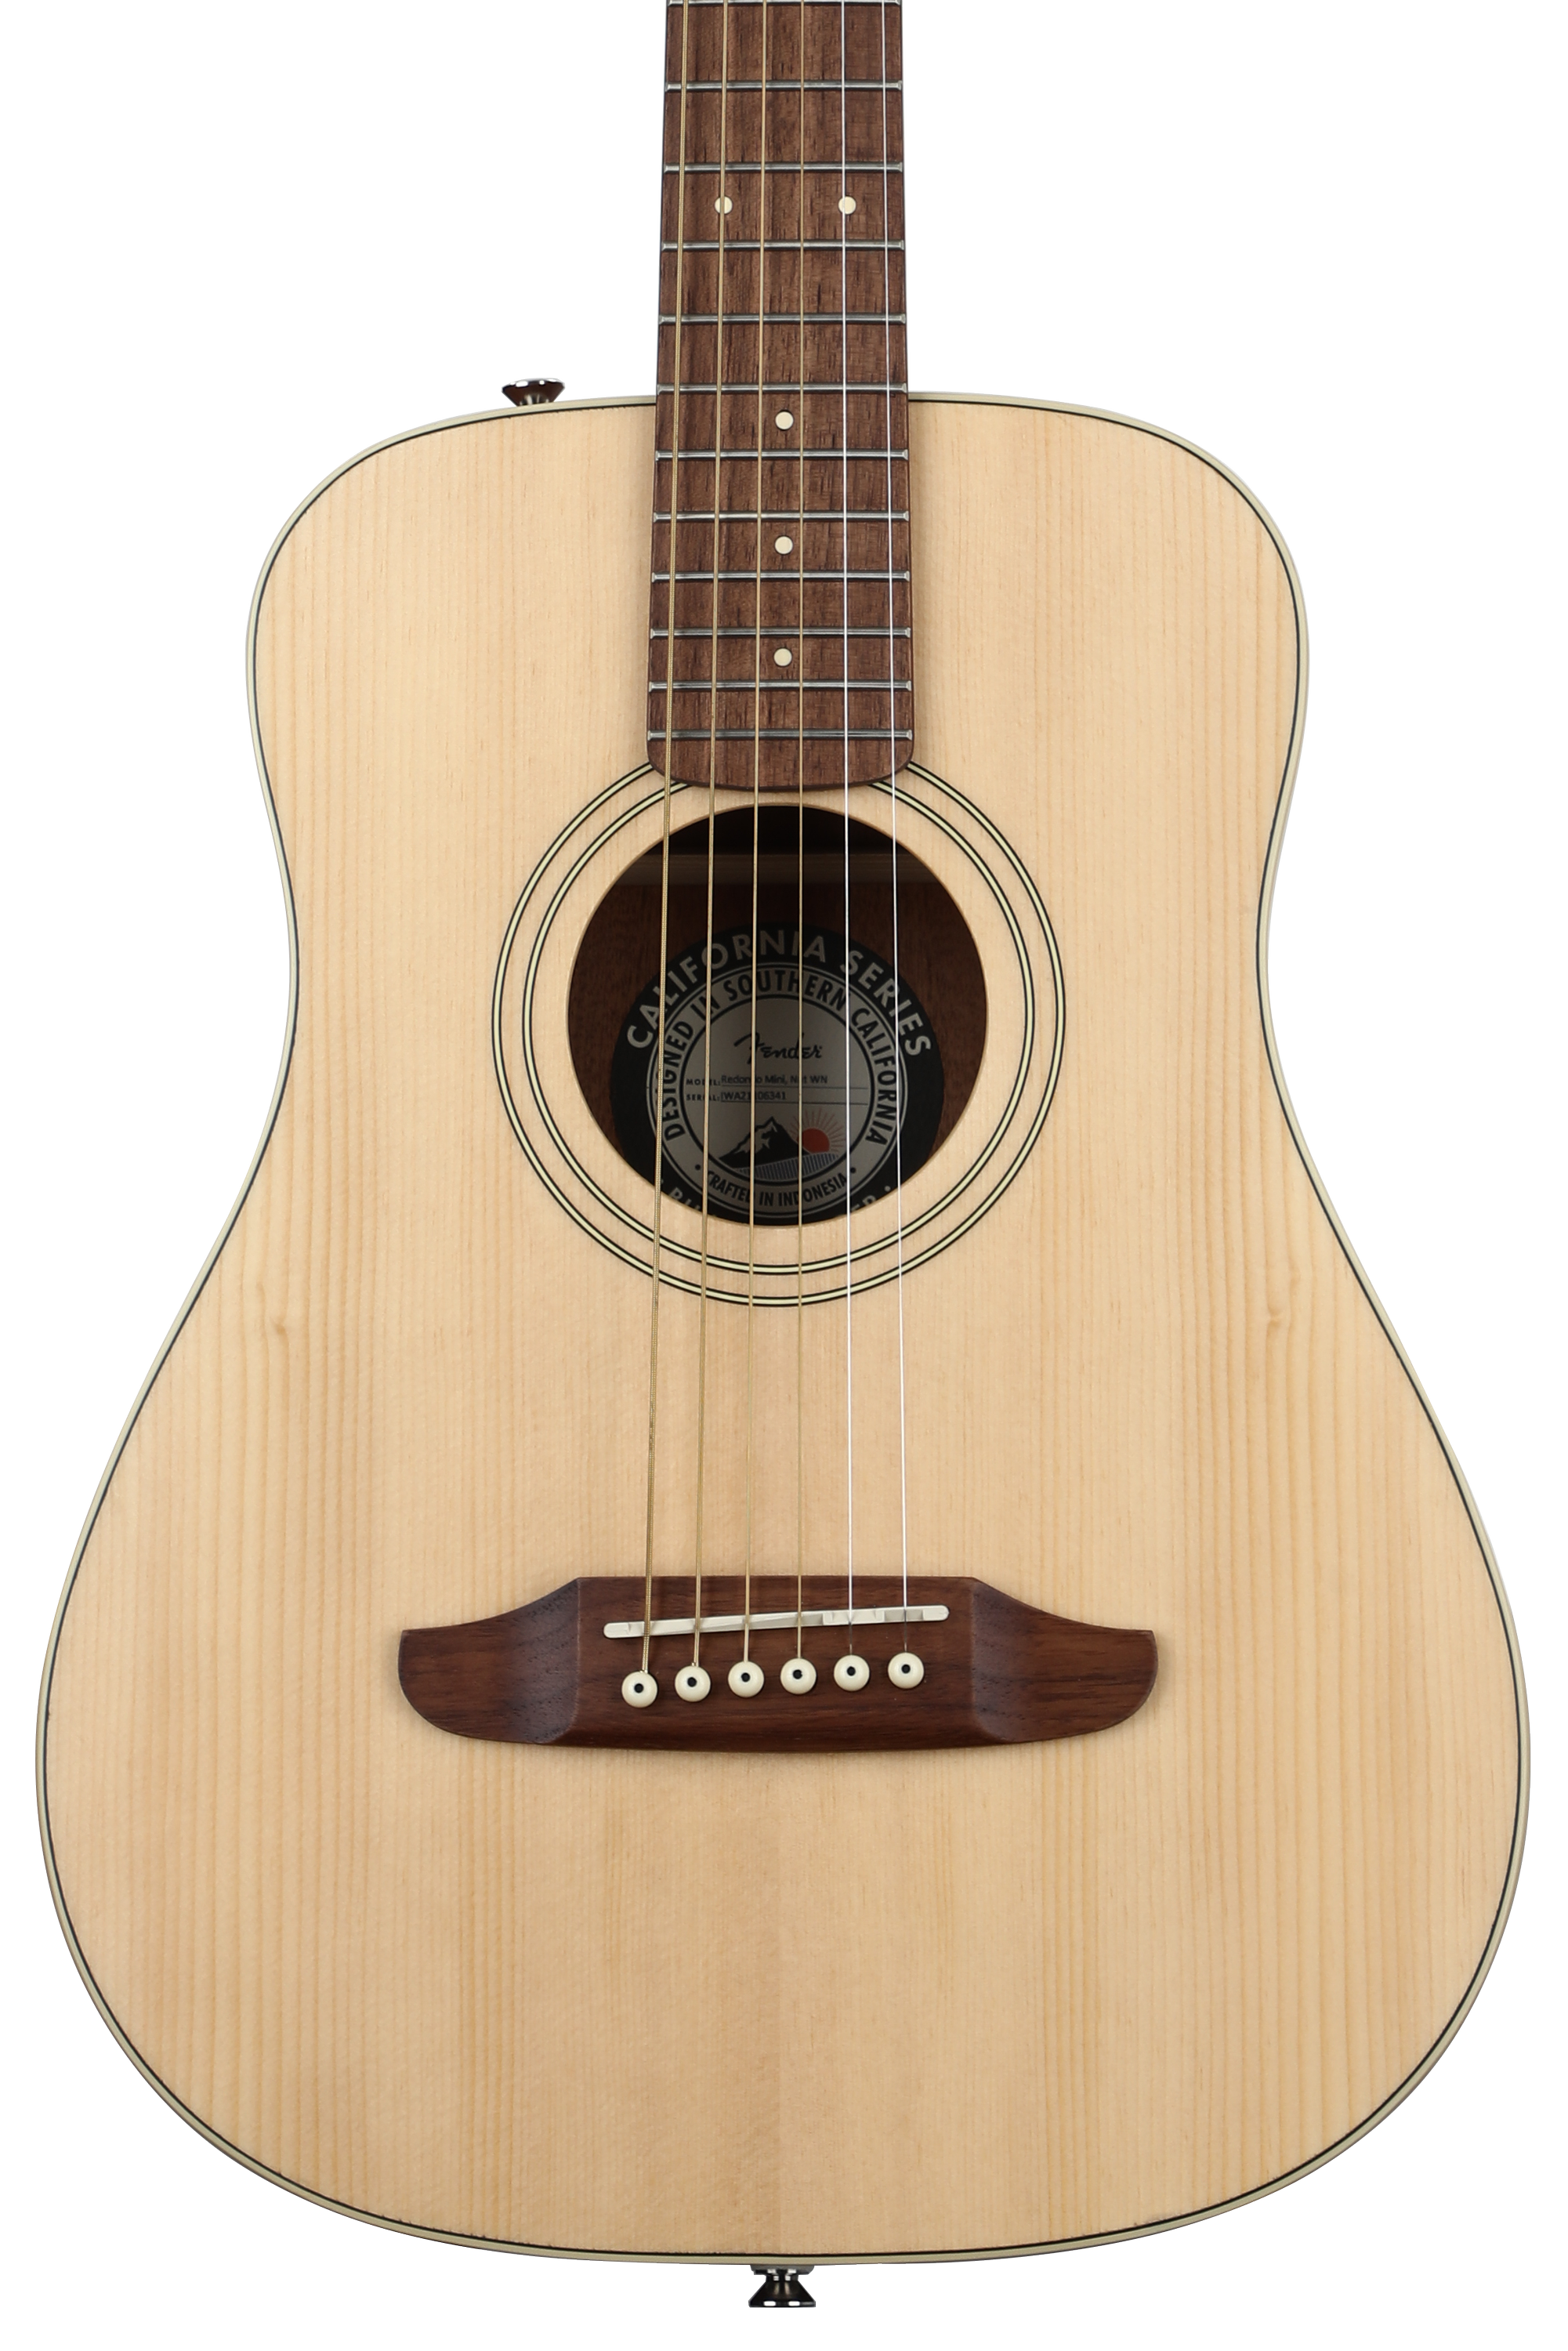 Bundled Item: Fender Redondo Mini Acoustic Guitar - Natural